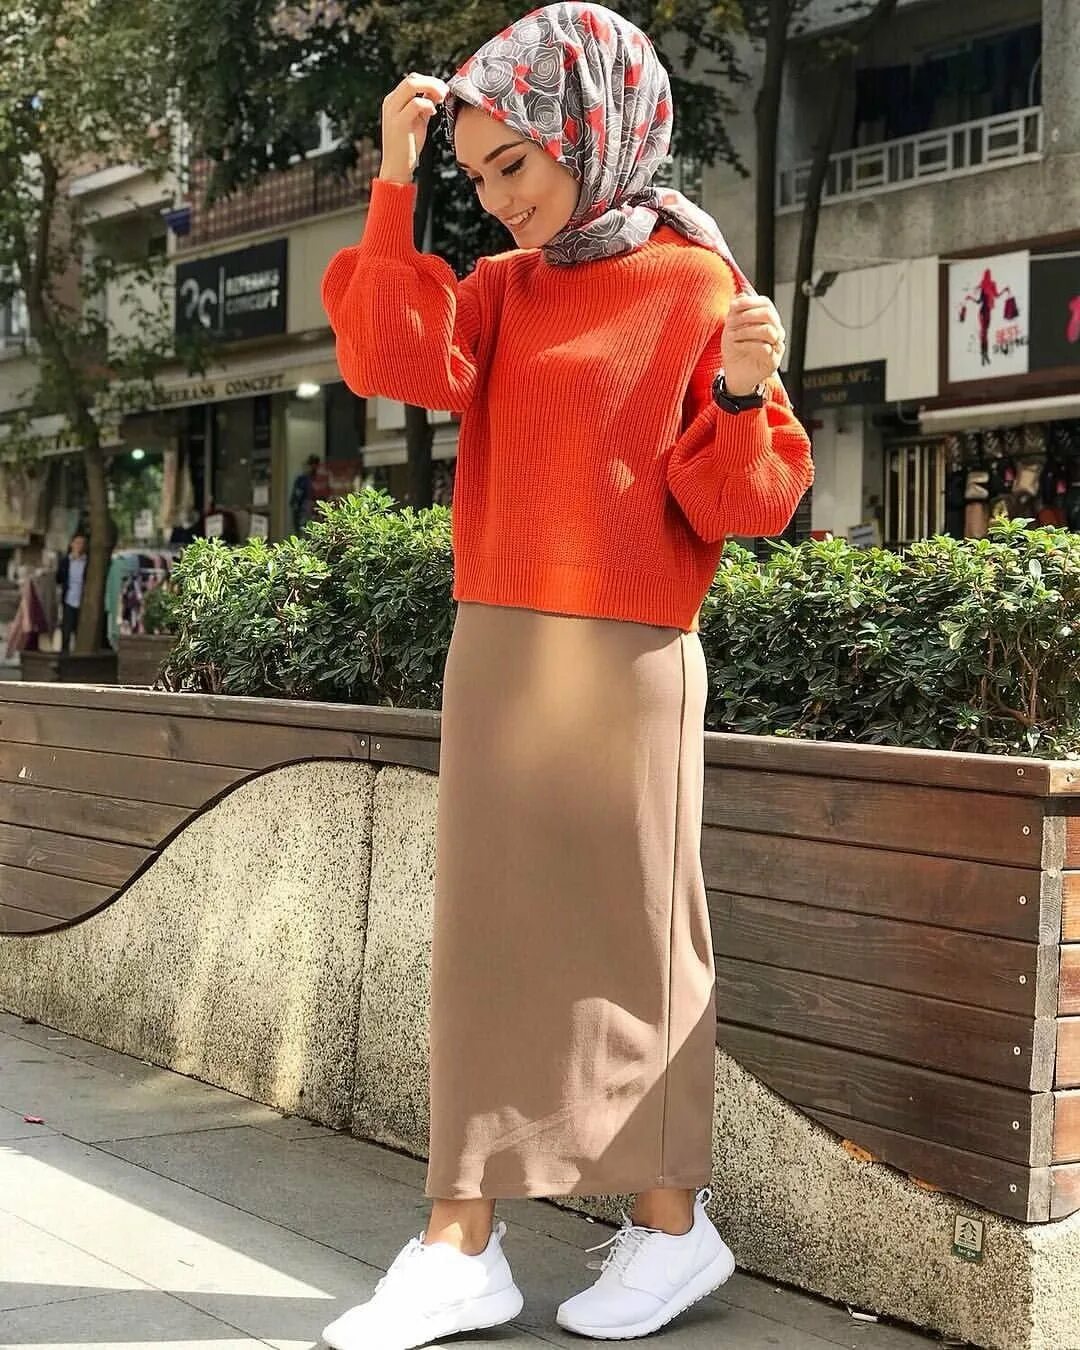 Hijab Moda 2020 одежда. Hijab Moda 2022 одежда Повседневная. Стильные образы для мусульманок. Стильный хиджаб.